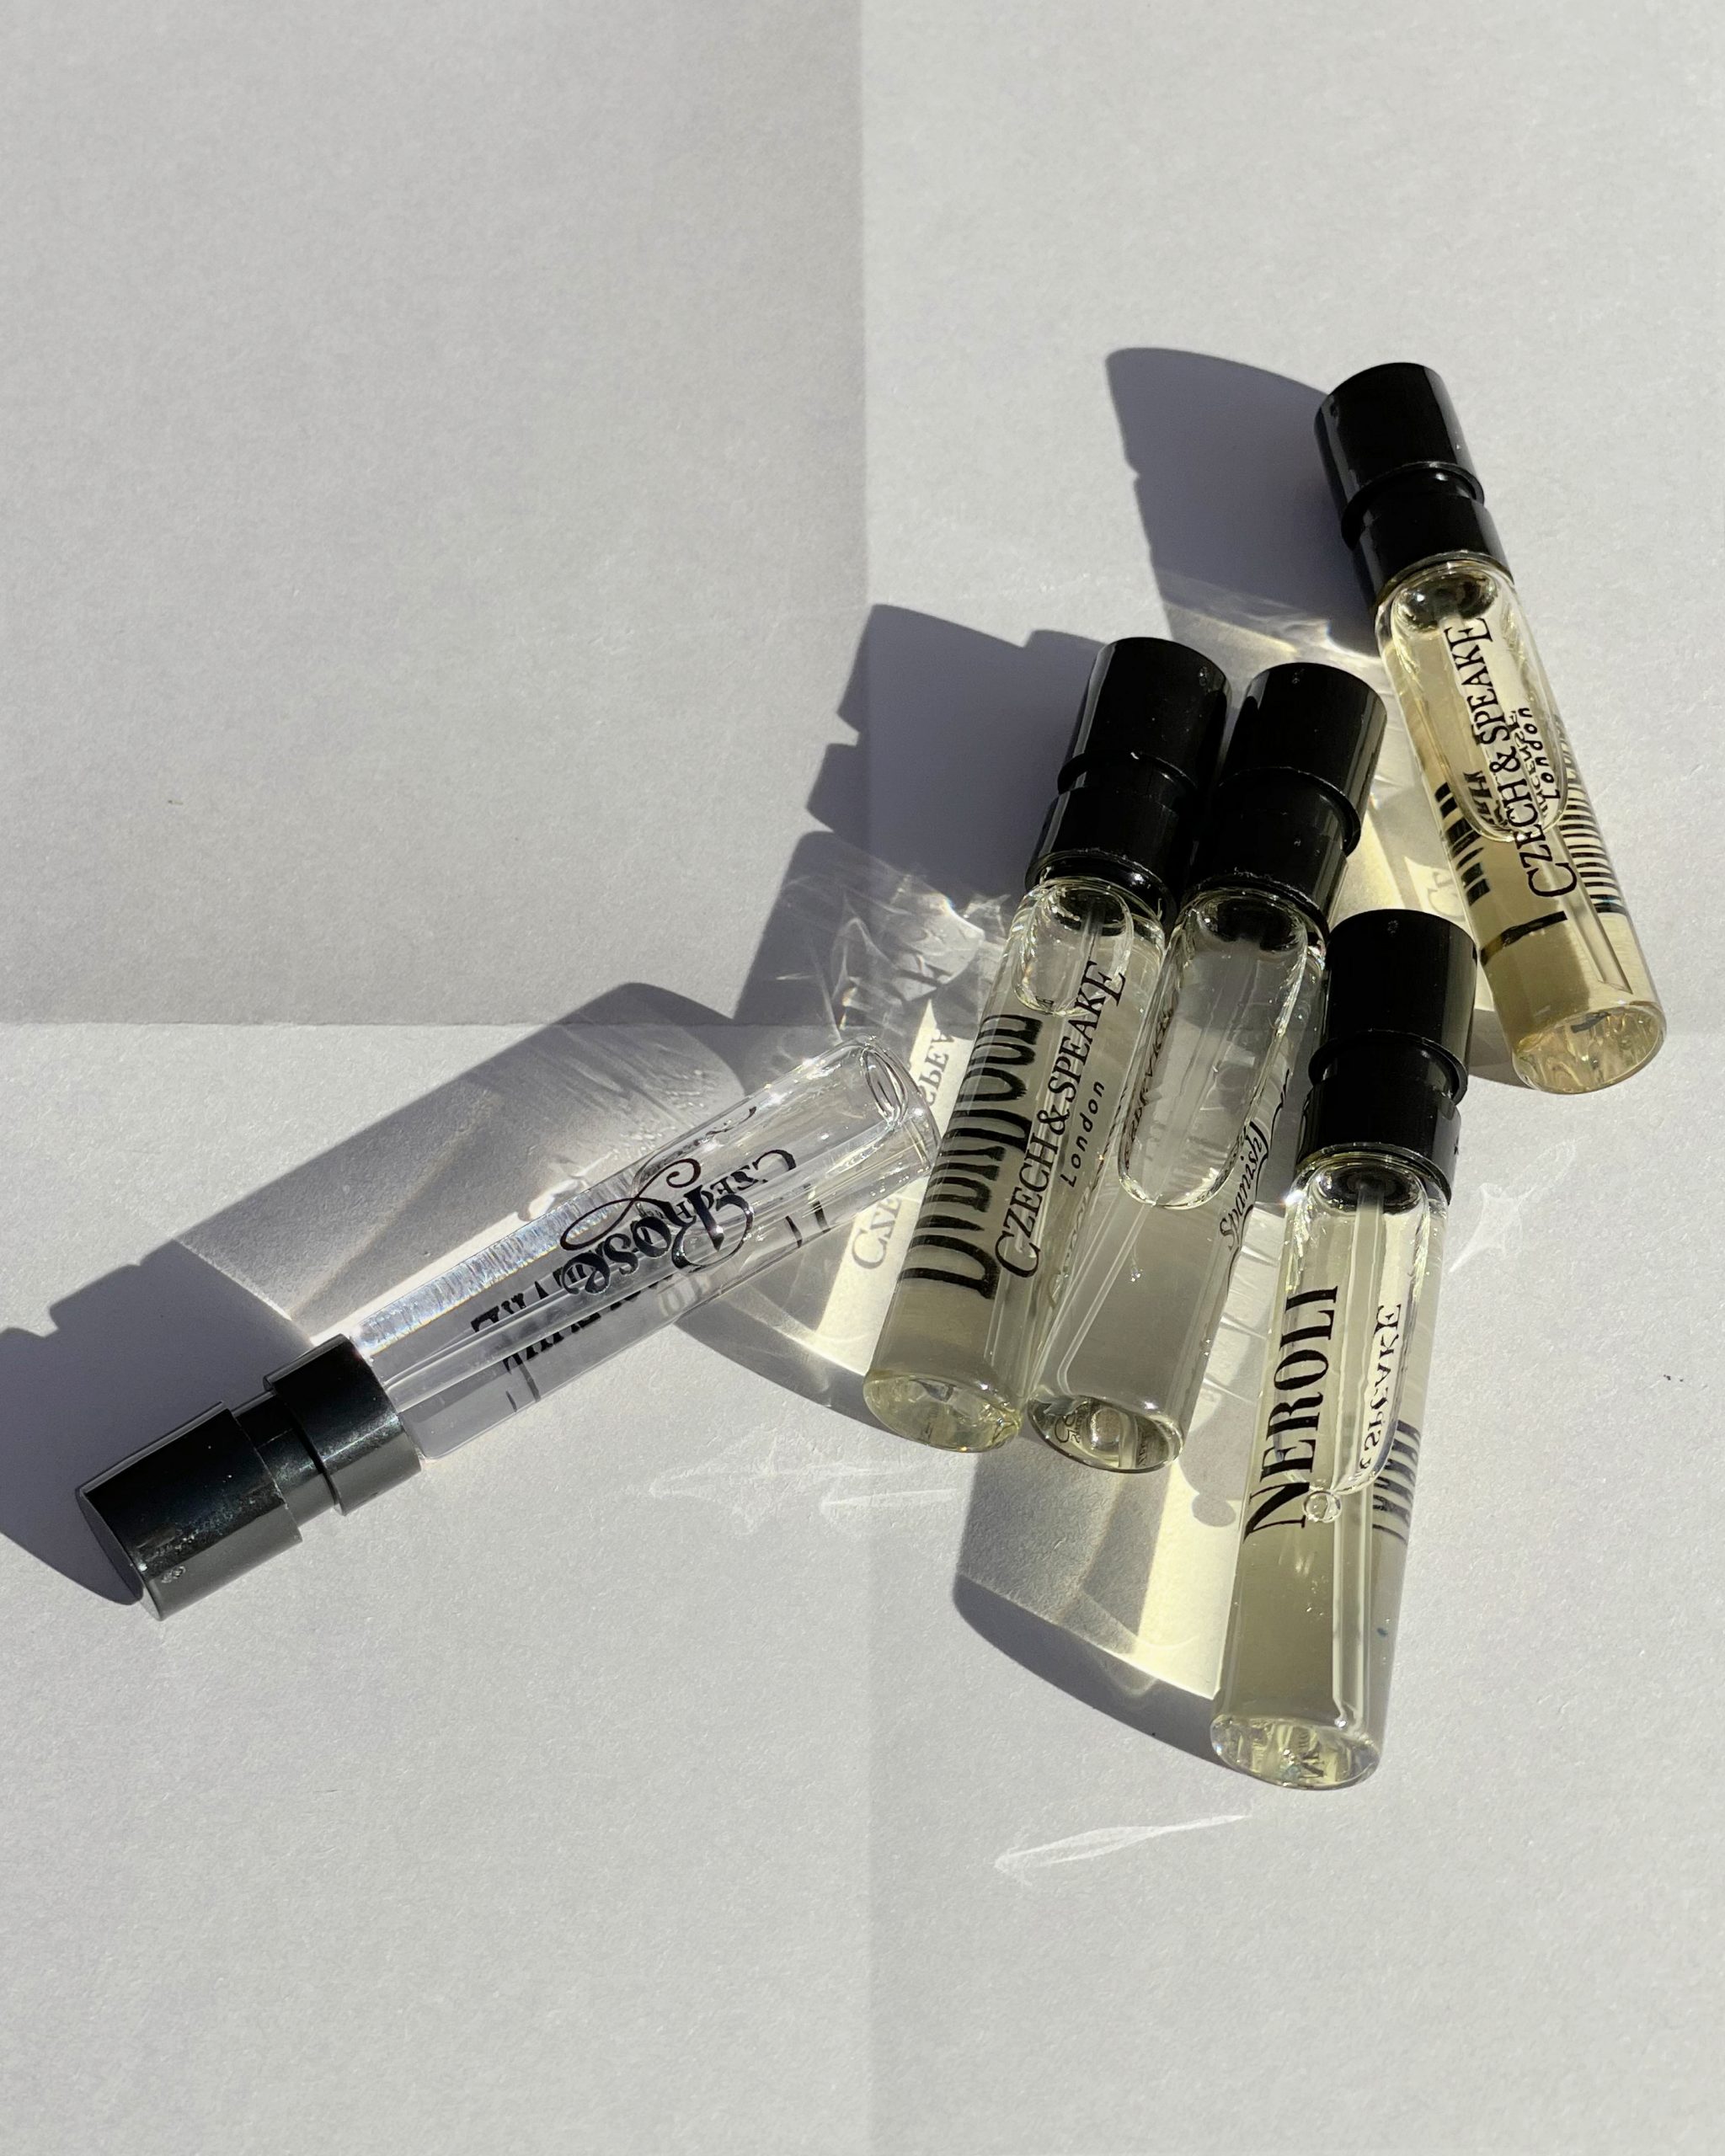 Perfume samples discovery set Czech & Speake Feminine fragrance 